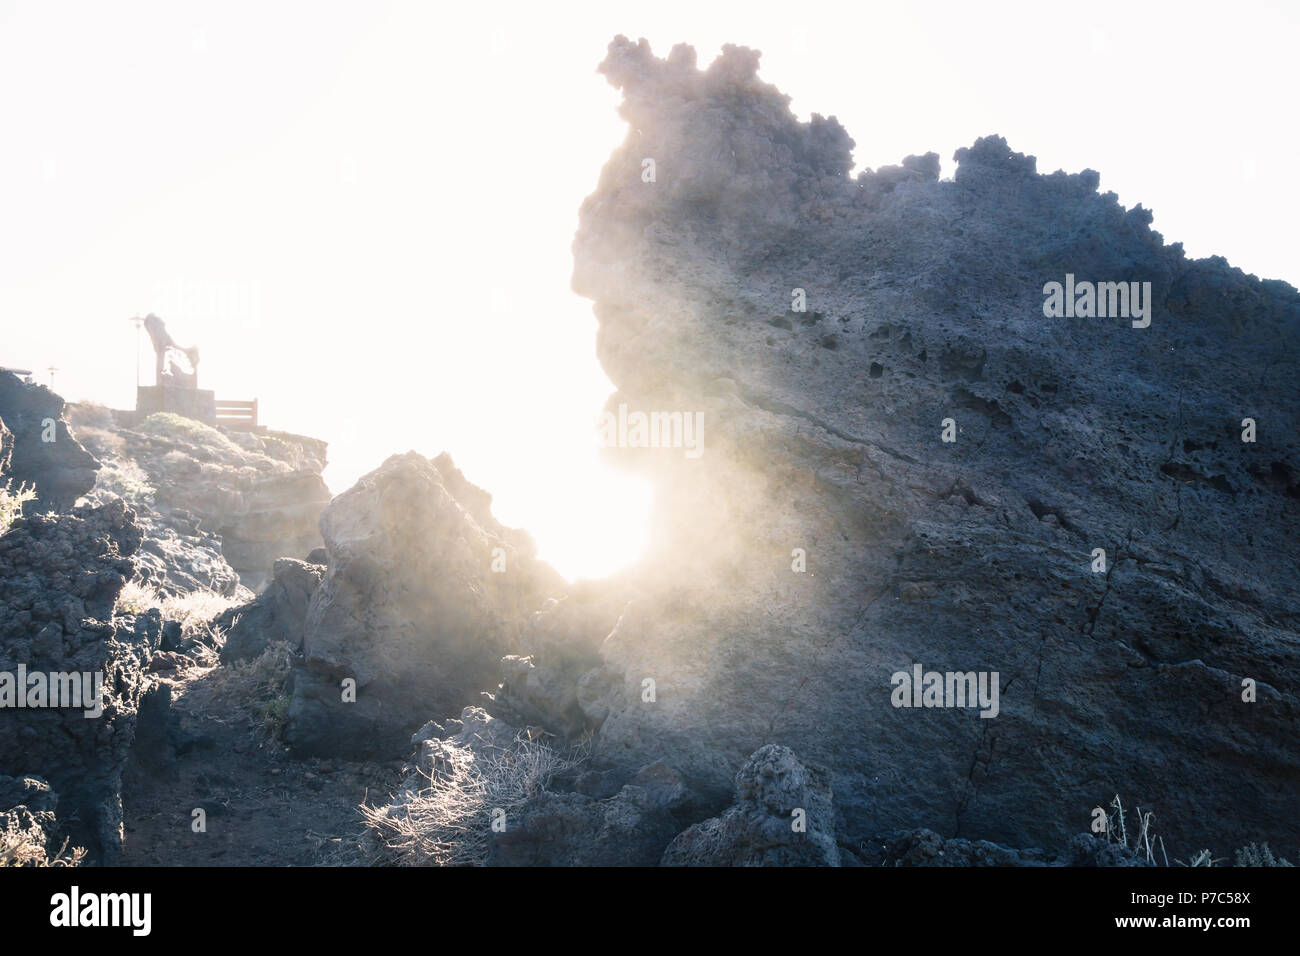 La lumière du soleil à travers un trou d'un rocher en pierre de lave le long de la côte, Frontera, El Hierro, Îles Canaries, Espagne Banque D'Images